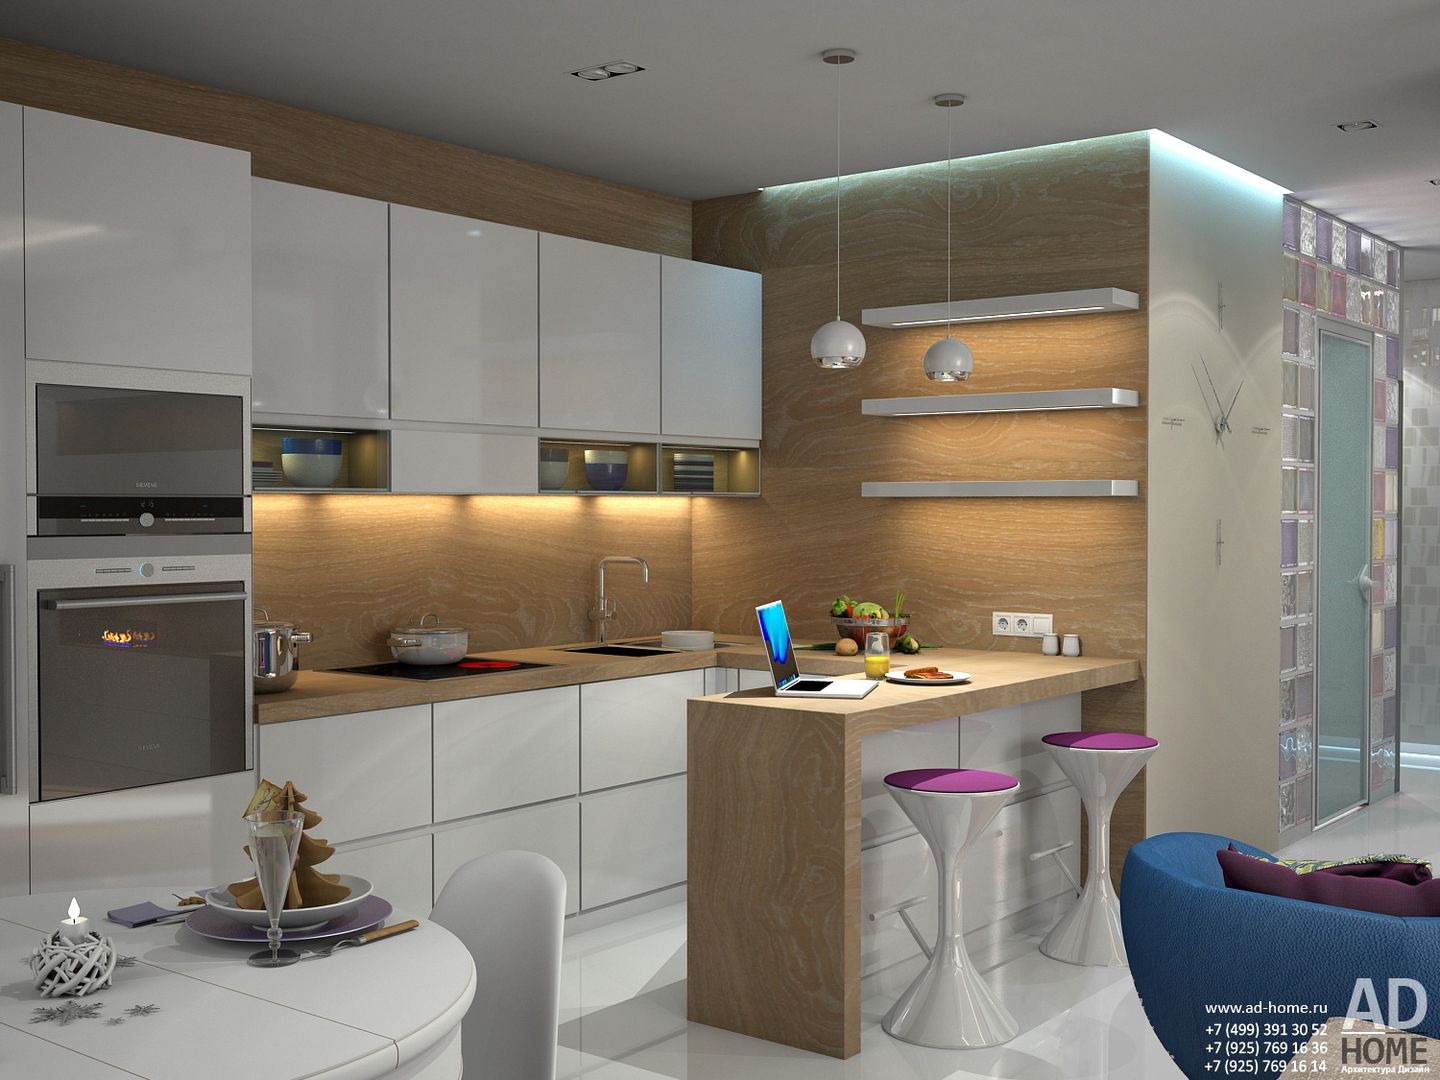 Современный дизайн интерьера,53 кв. м в ЖК Успенские горки, Ad-home Ad-home Cucina moderna